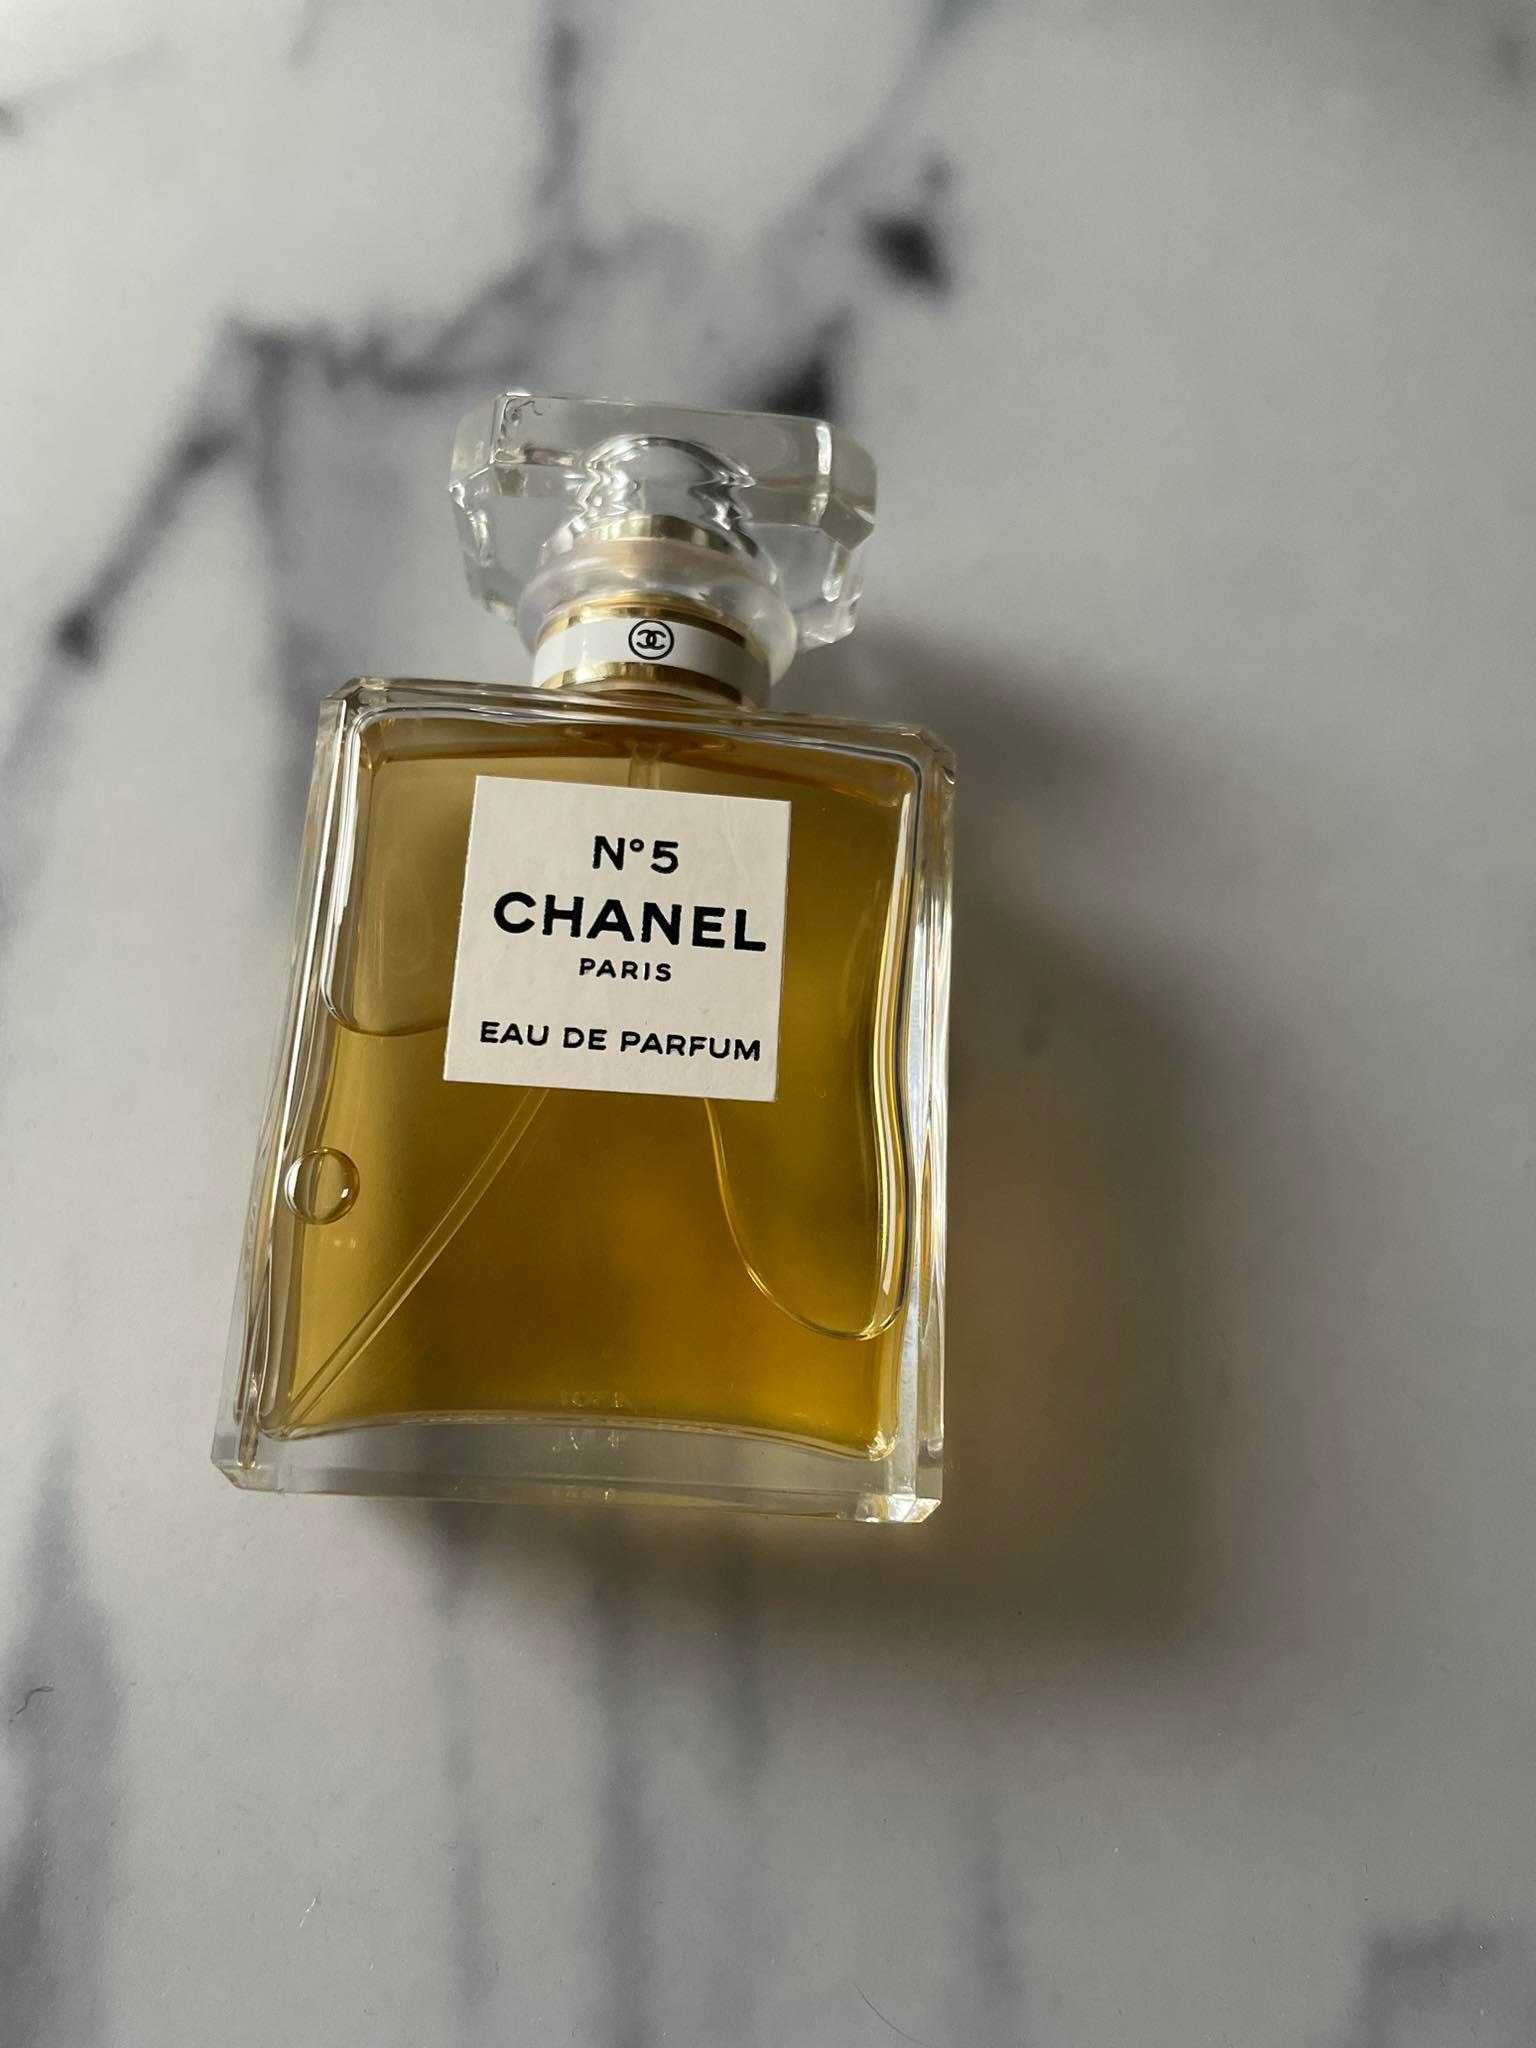 Perfum Chanel no 5 35 ml nieużywany ORYGINALNY